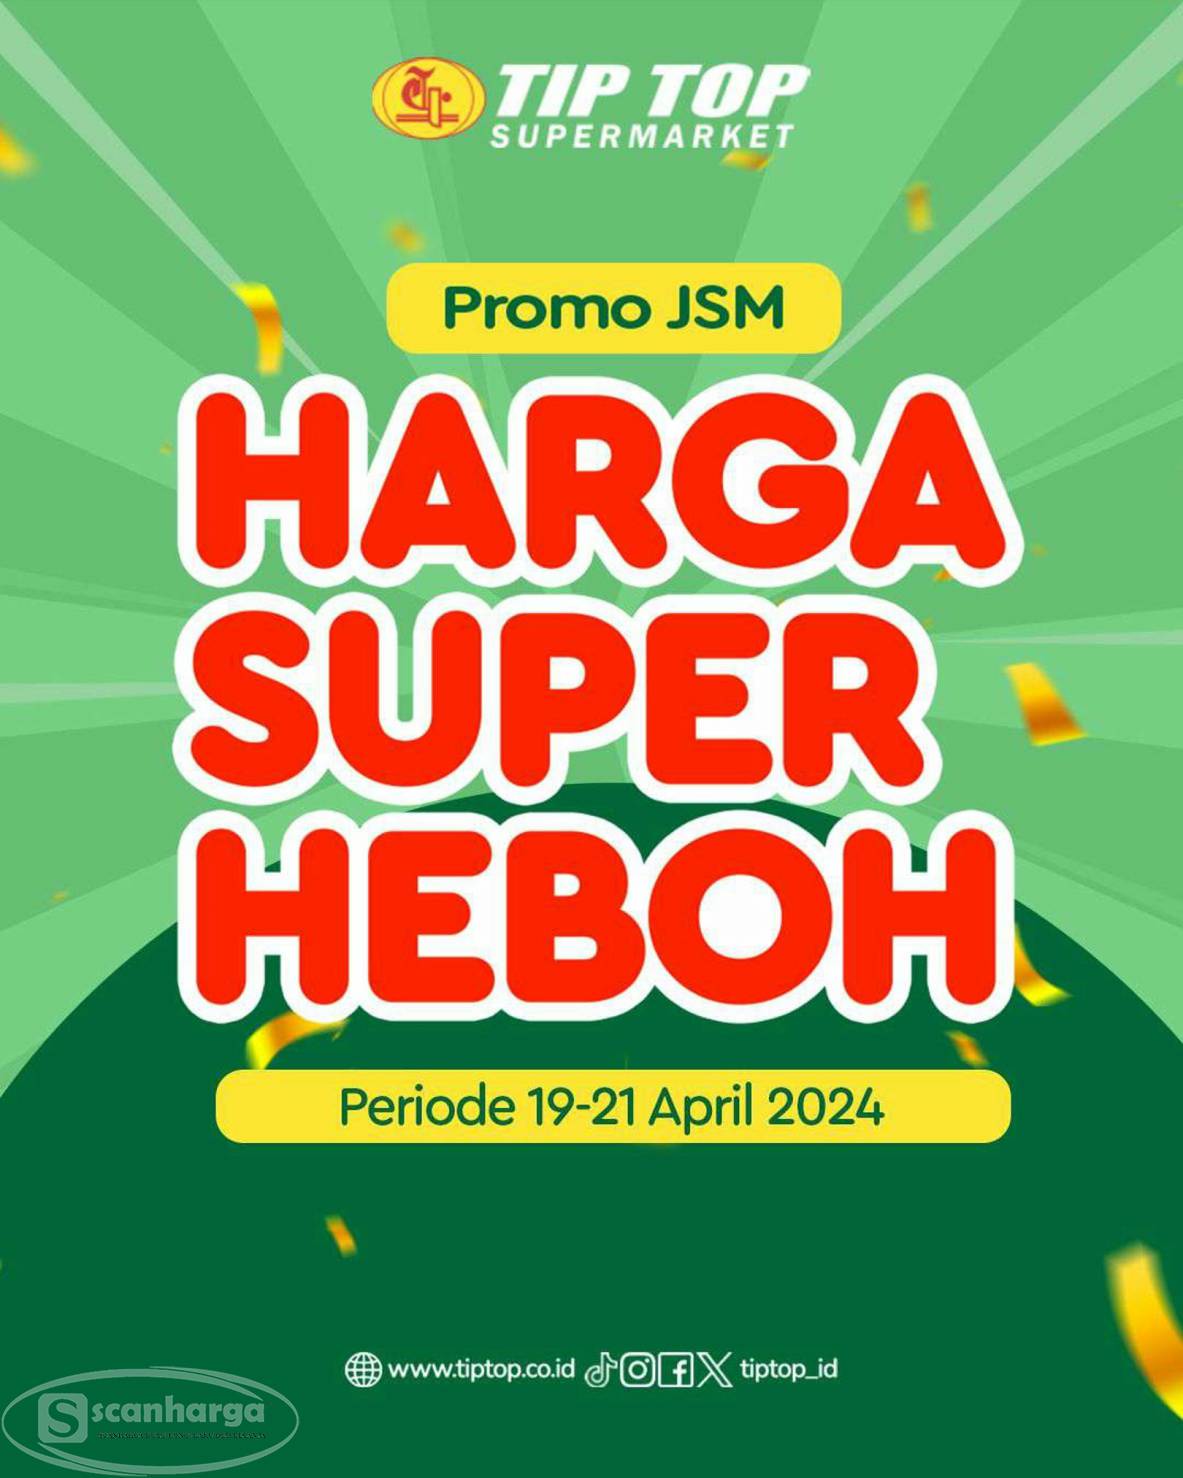 Katalog Promo JSM TIPTOP Weekend  Periode 19 - 21 April 2024